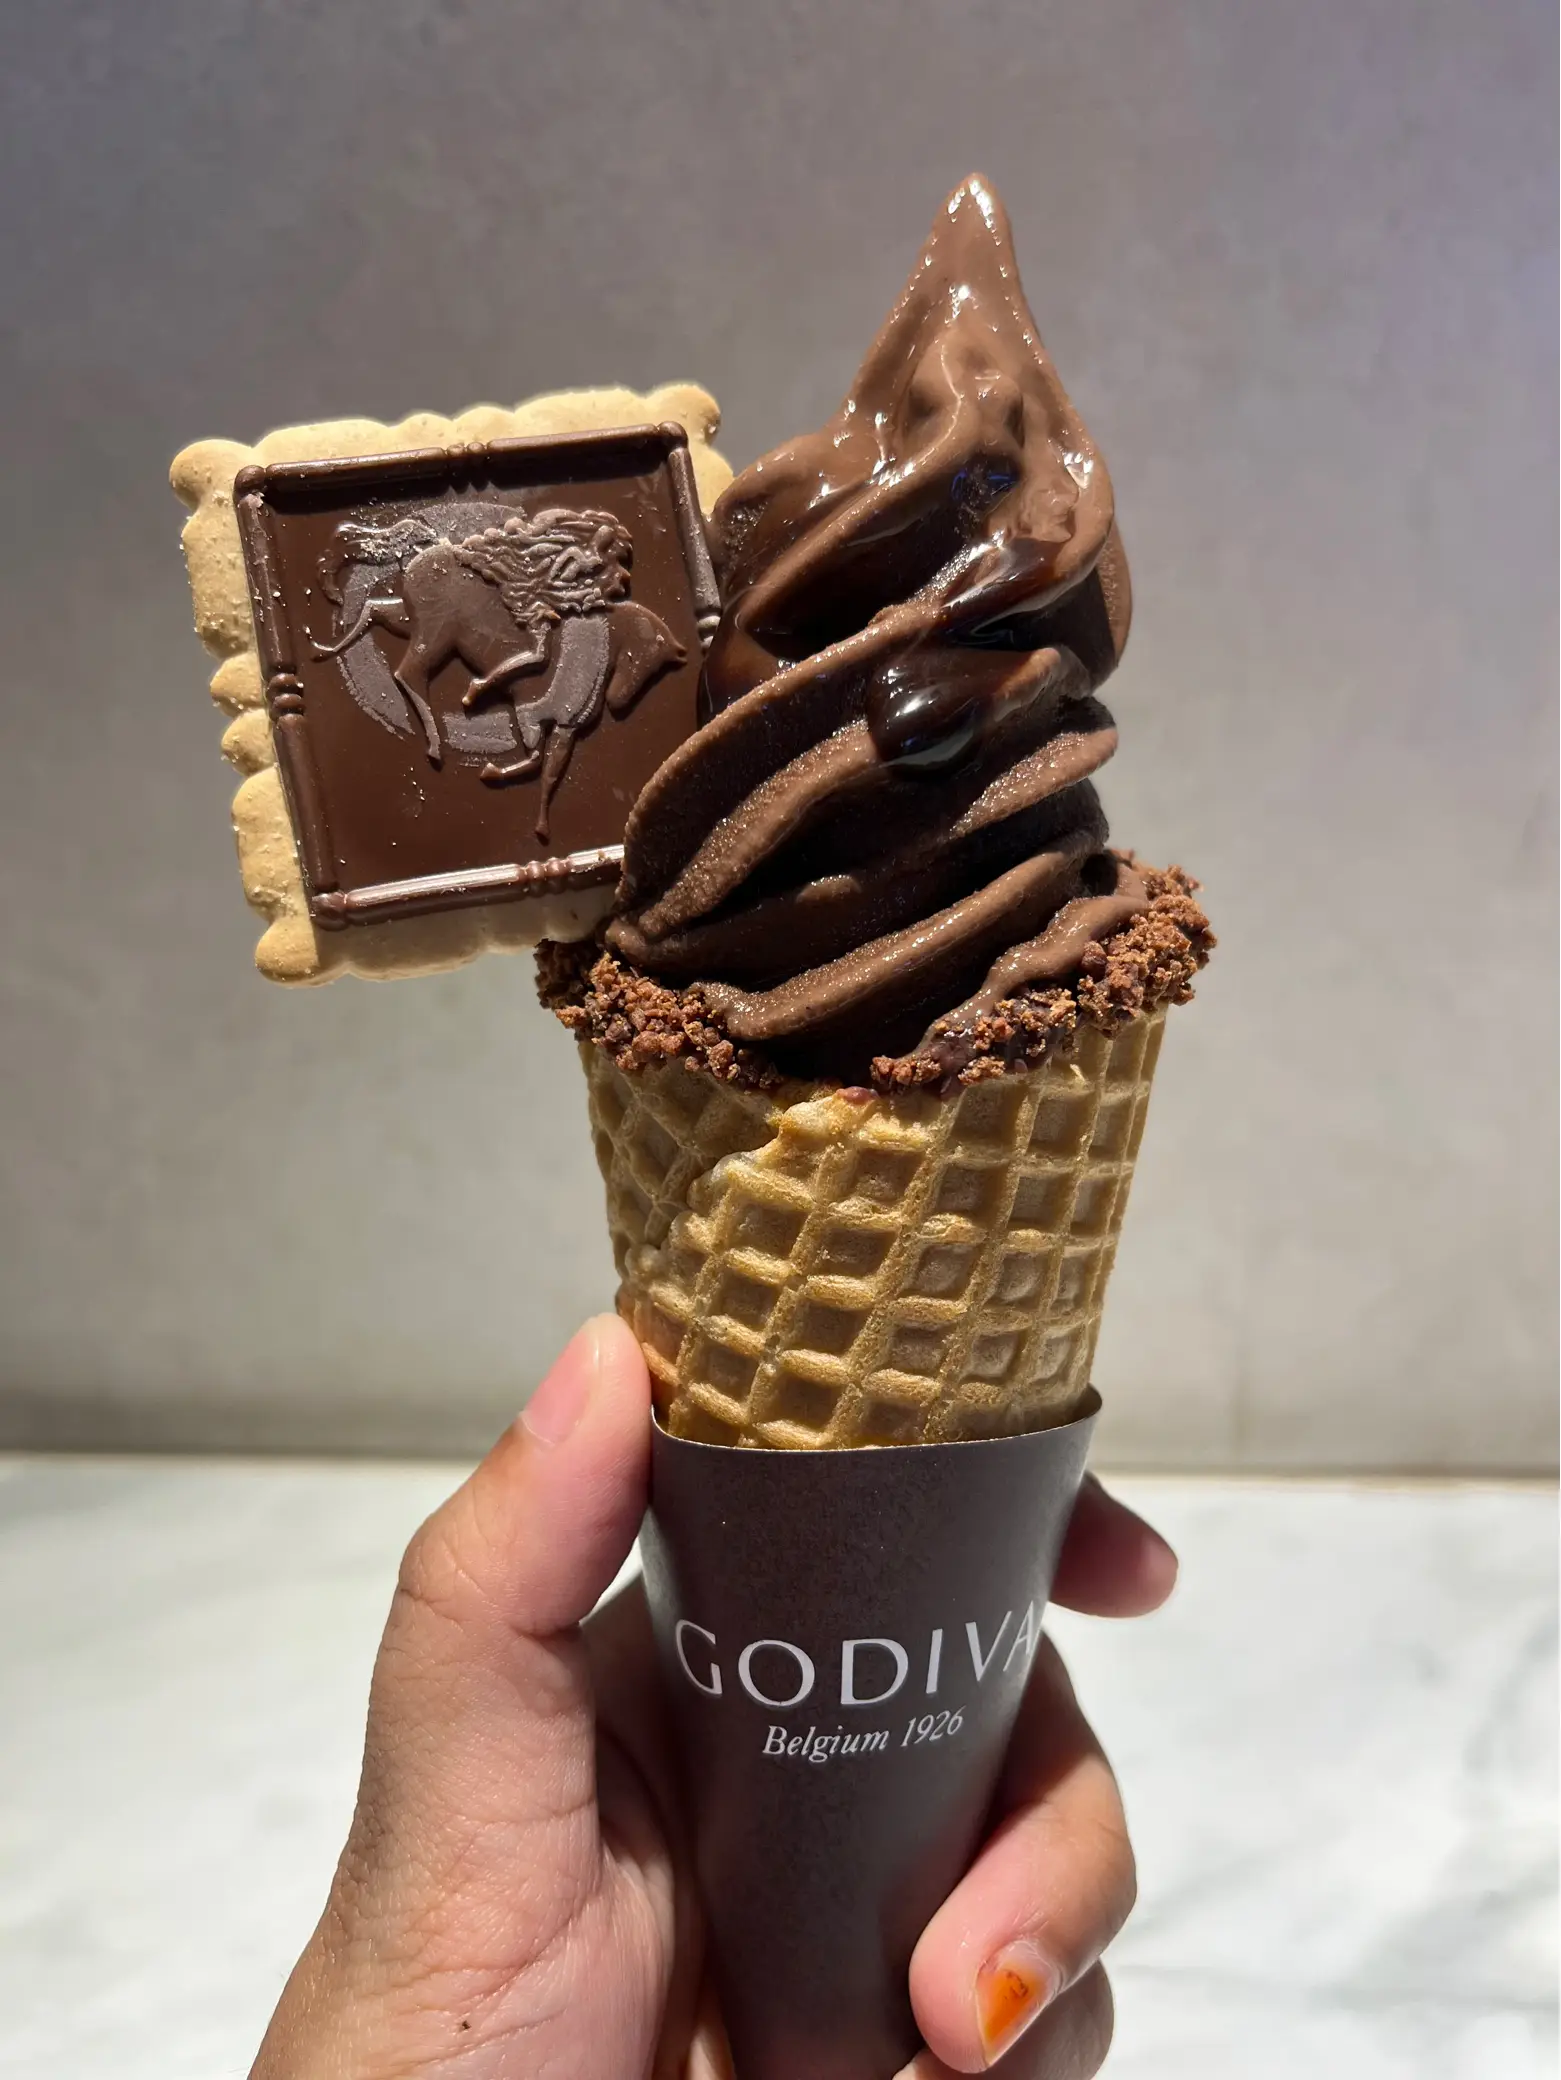 GODIVA releases line of premium ice cream flavors